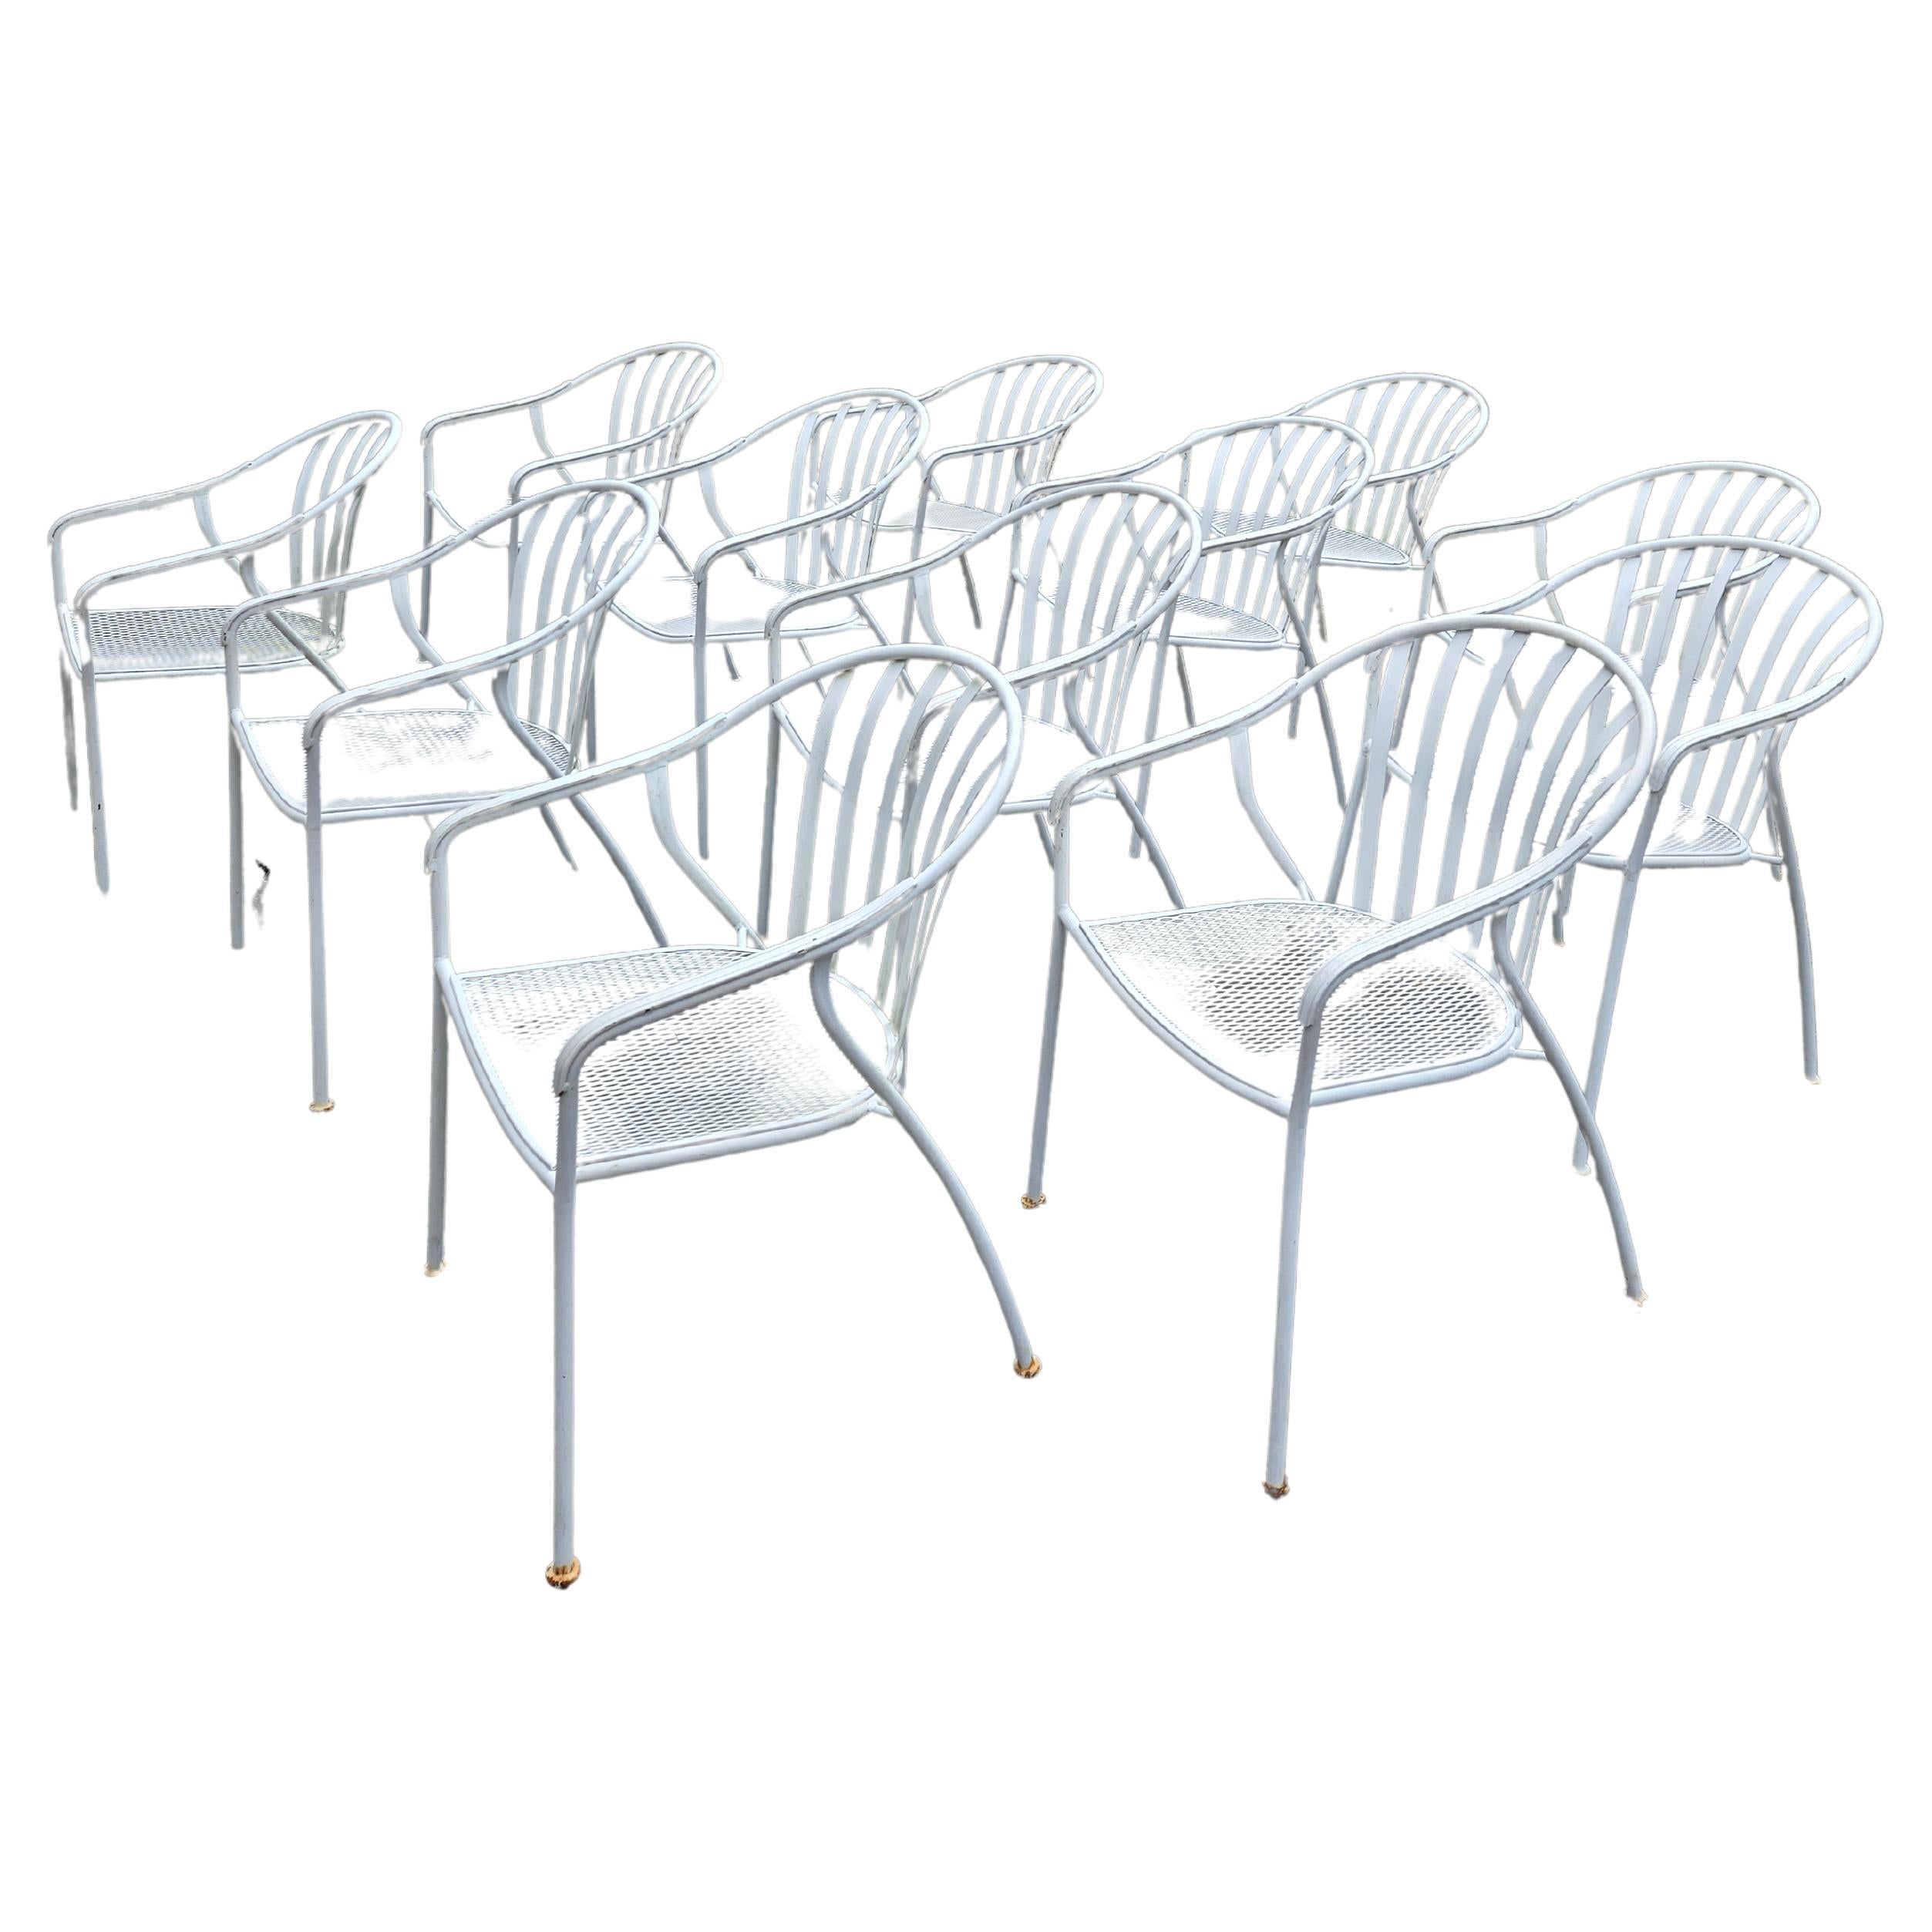 
Dieses Set aus 12 Vintage-Stühlen aus Schmiedeeisen ist ideal, um jedem Wohnraum einen Hauch von antikem Charme zu verleihen. Die robuste und langlebige Konstruktion sorgt dafür, dass diese Stühle dem täglichen Gebrauch standhalten und über Jahre